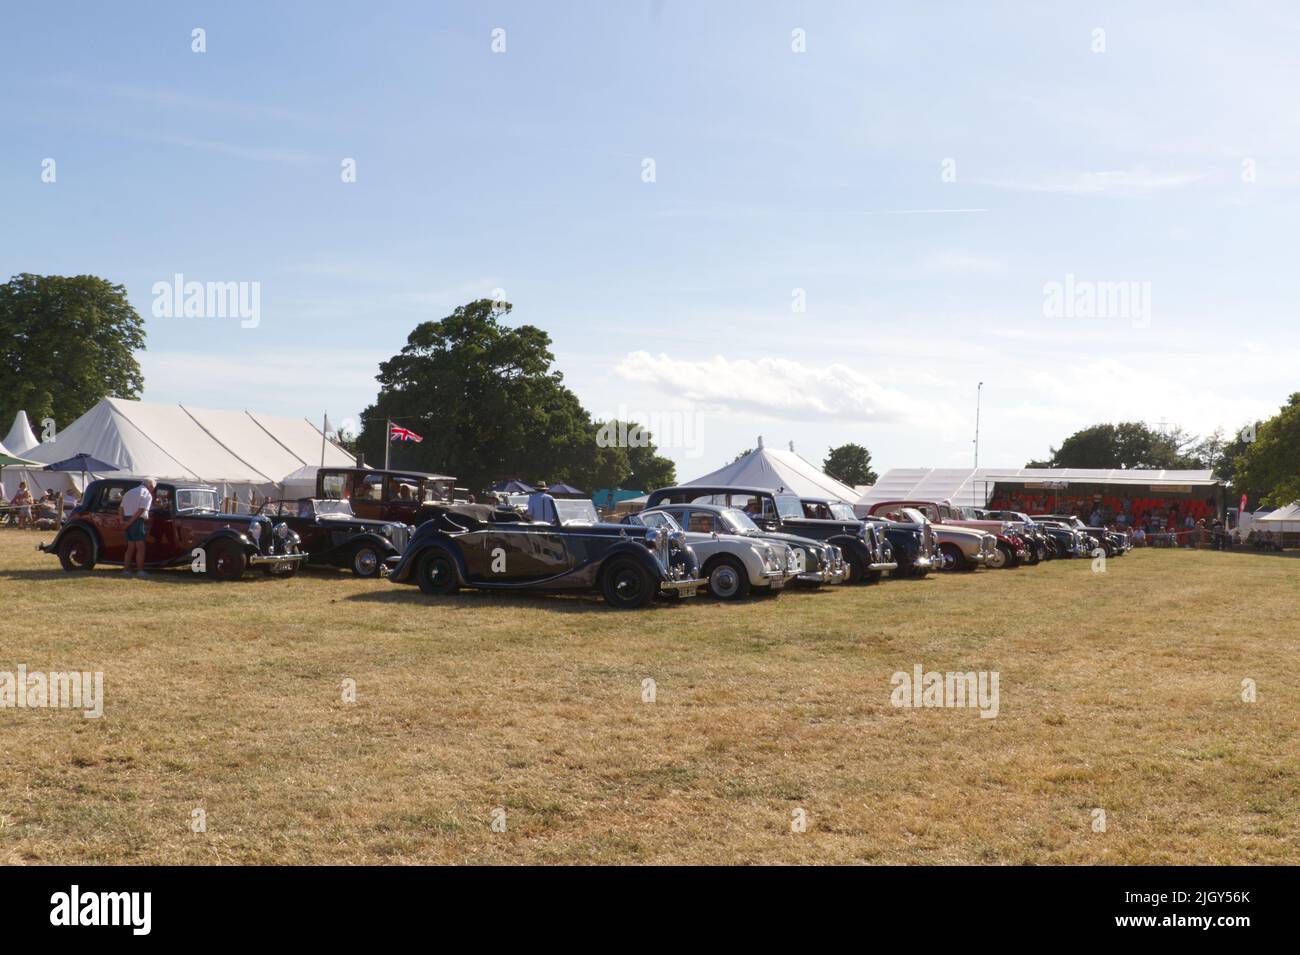 Oldtimer auf der Tendring Hundred Show in Essex, dem größten landwirtschaftlichen Event des Landes. Stockfoto